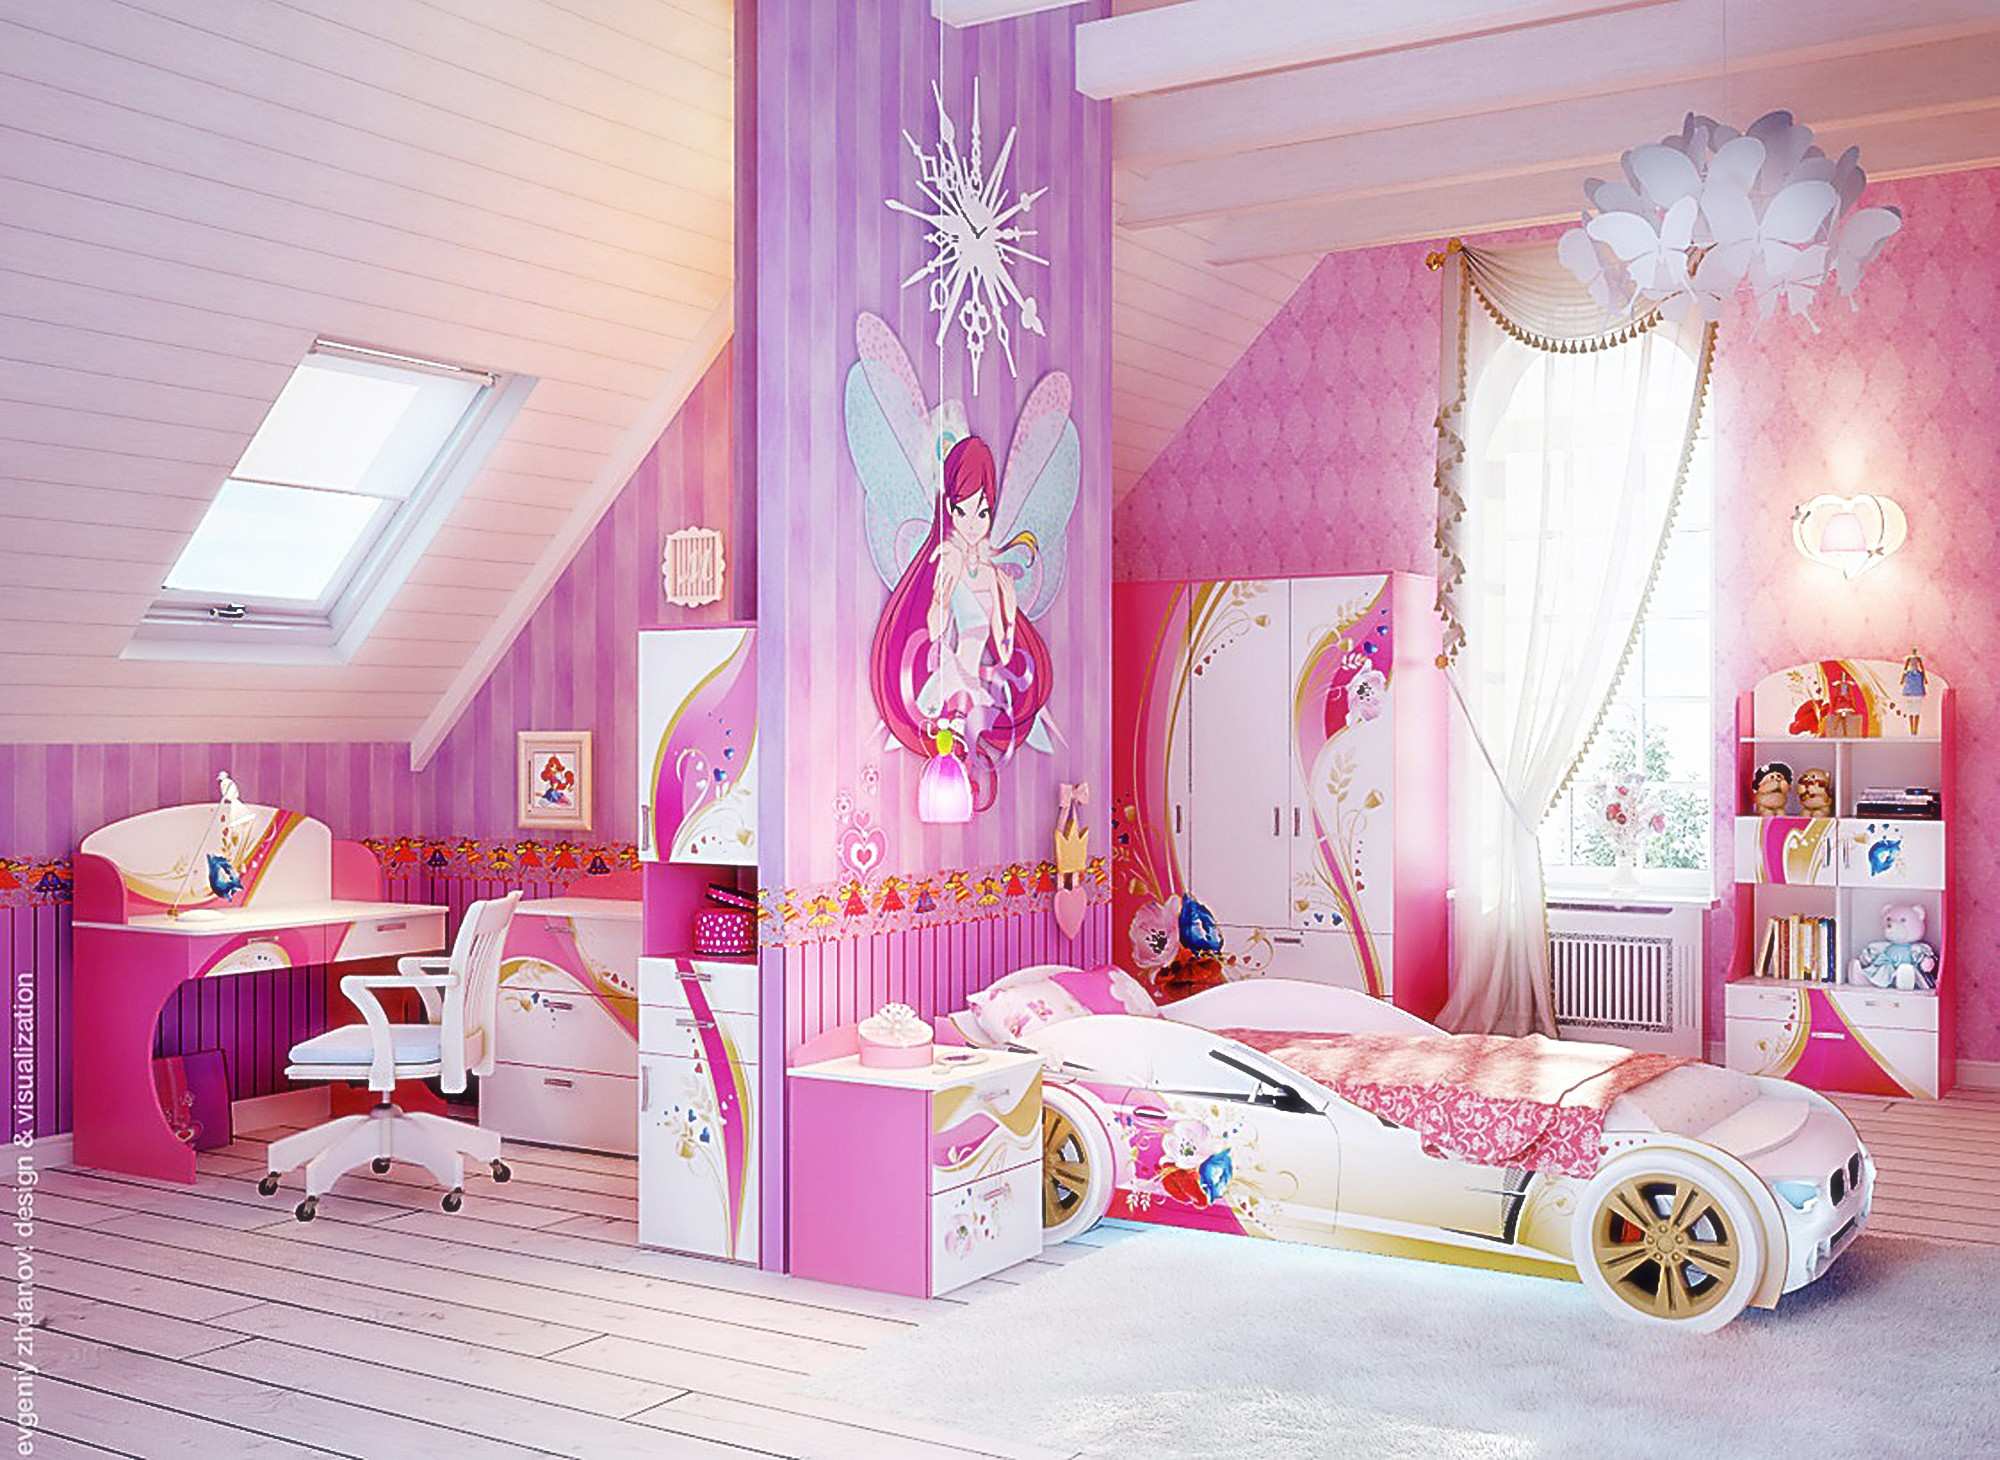 2000x1460 Ý tưởng trang trí cho phòng ngủ nữ tính Phòng ngủ tuyệt vời Màu tím lãng mạn